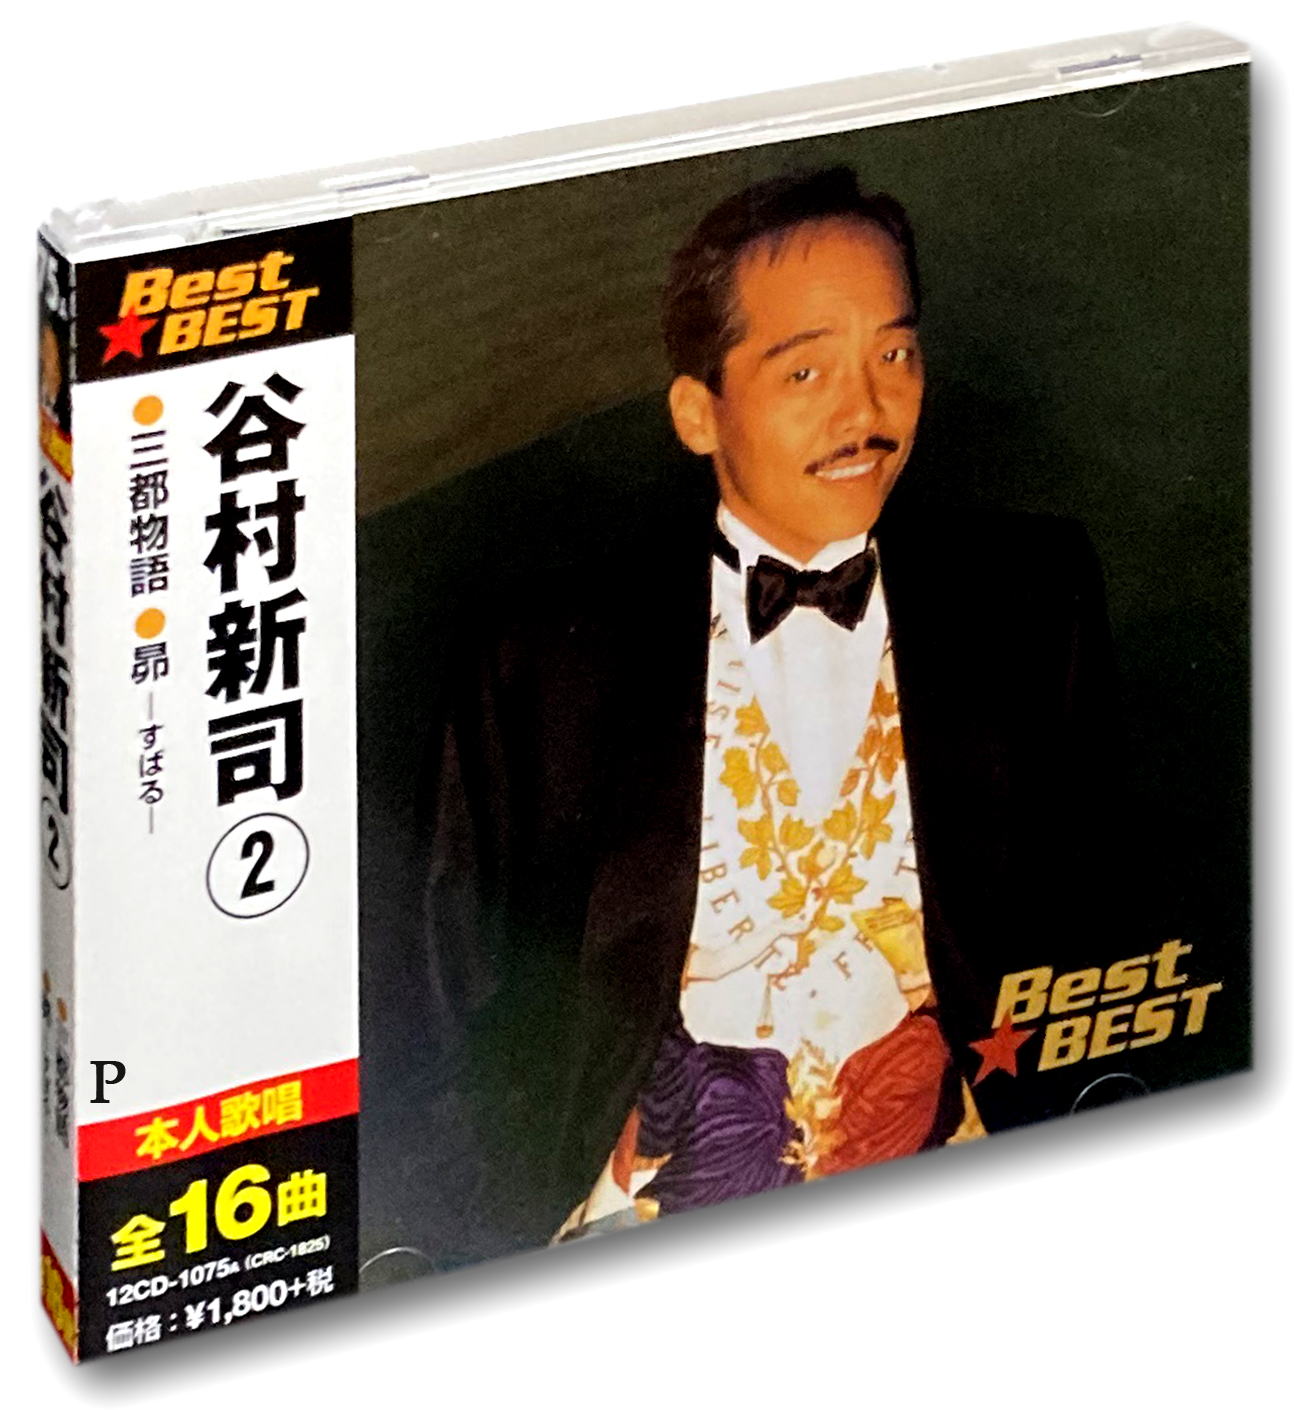 新品 谷村新司 2 ベスト / 昴-すばる- 三都物語 サライ (CD)12CD-1075A